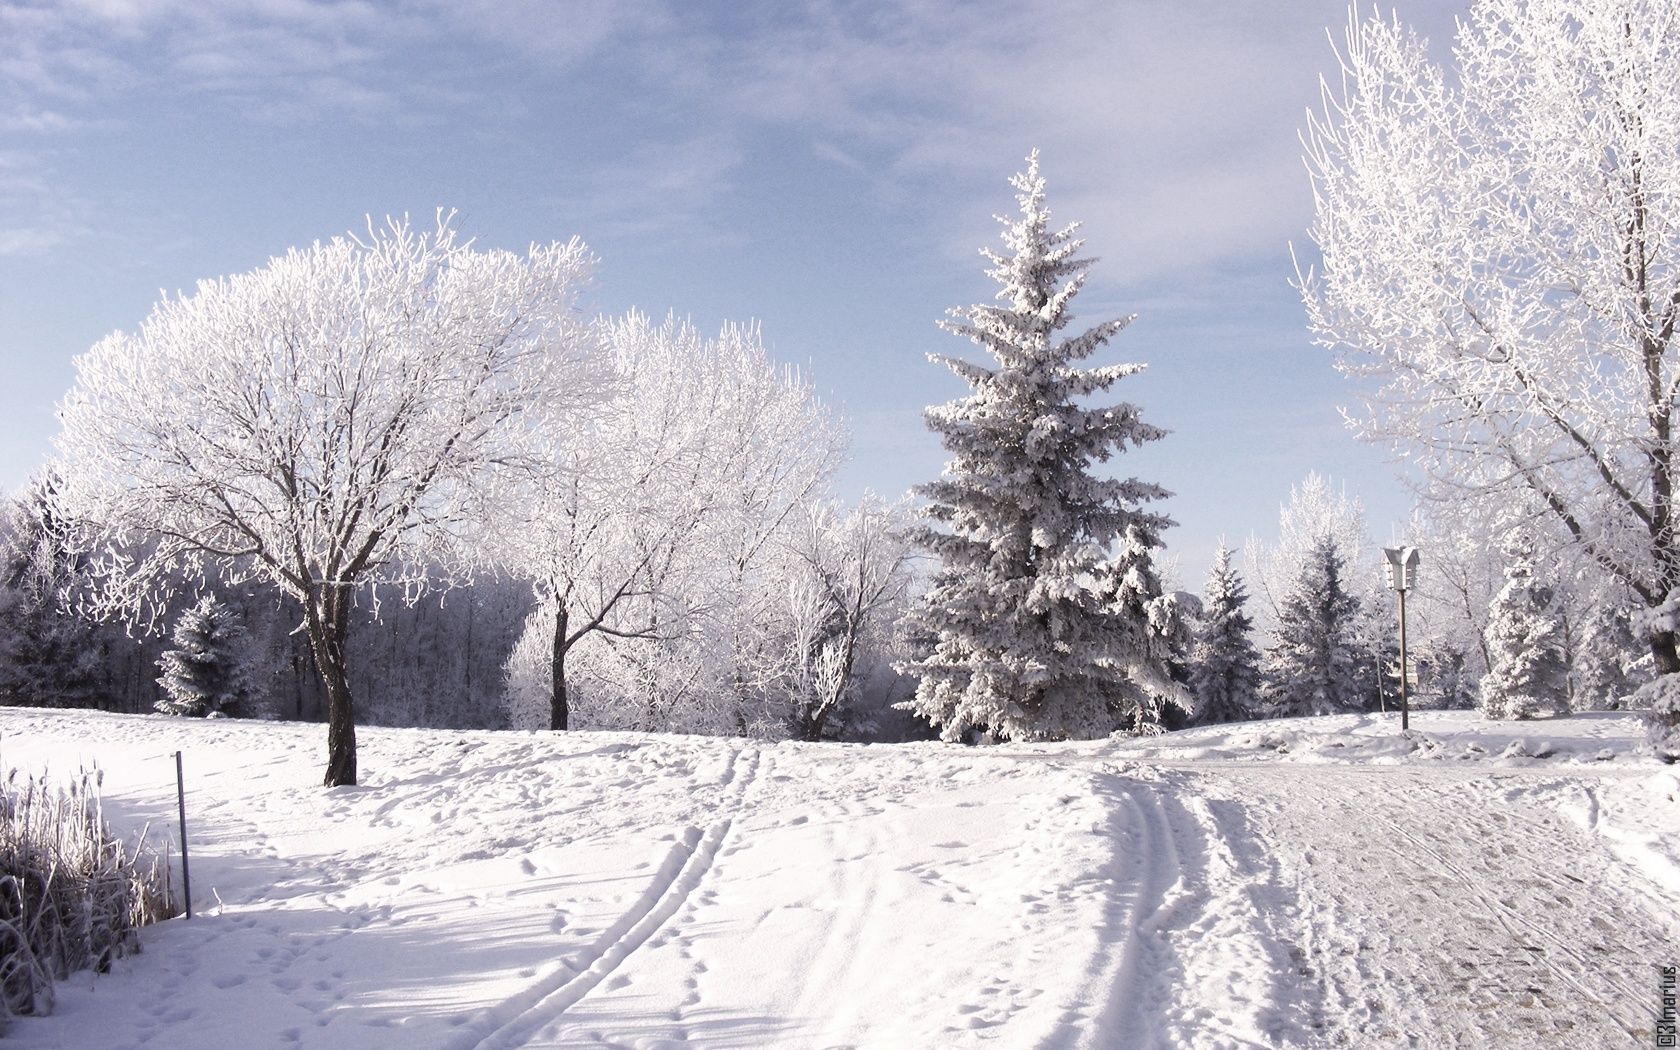 Winter Season. Winter scenery, Winter wonderland wallpaper, Winter wallpaper